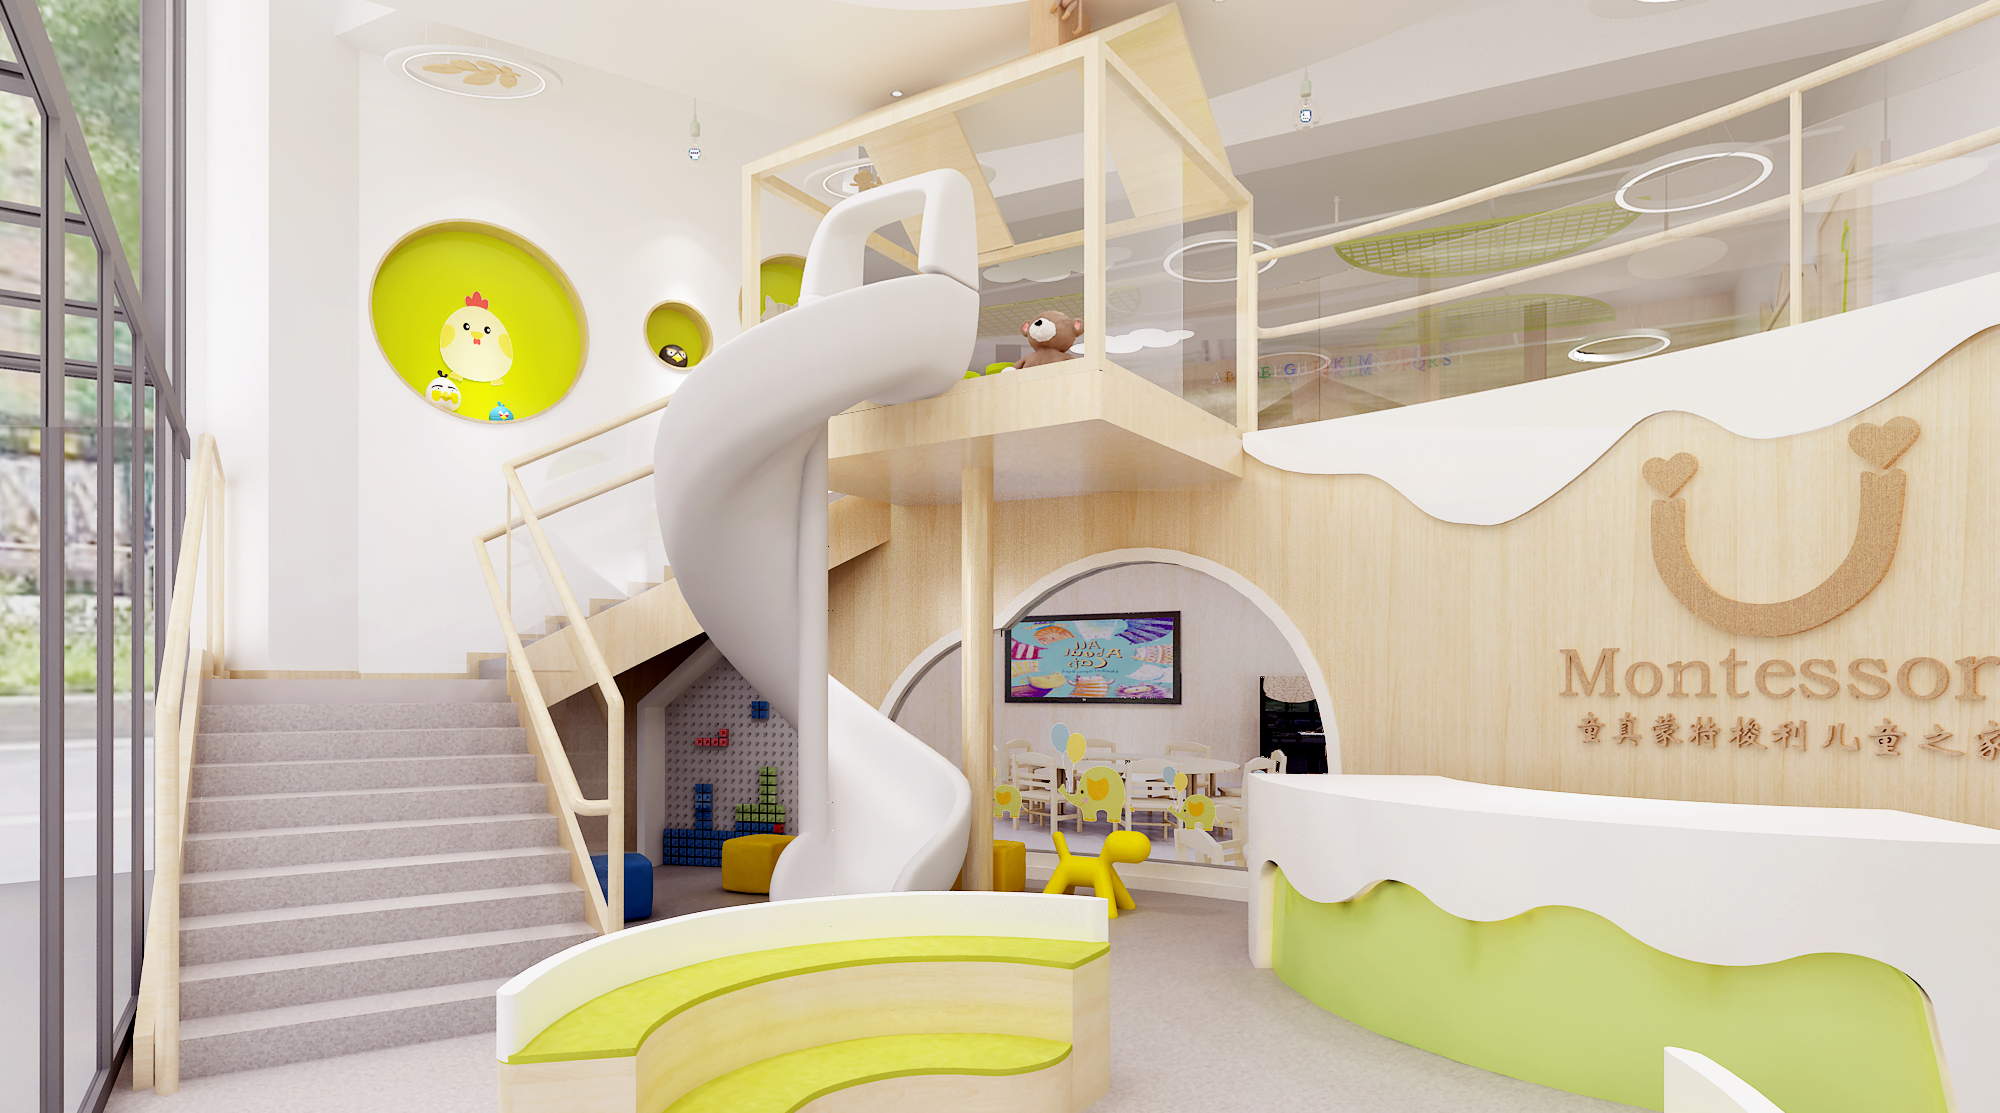 幼儿园室内设计风格与幼儿教育息息相关